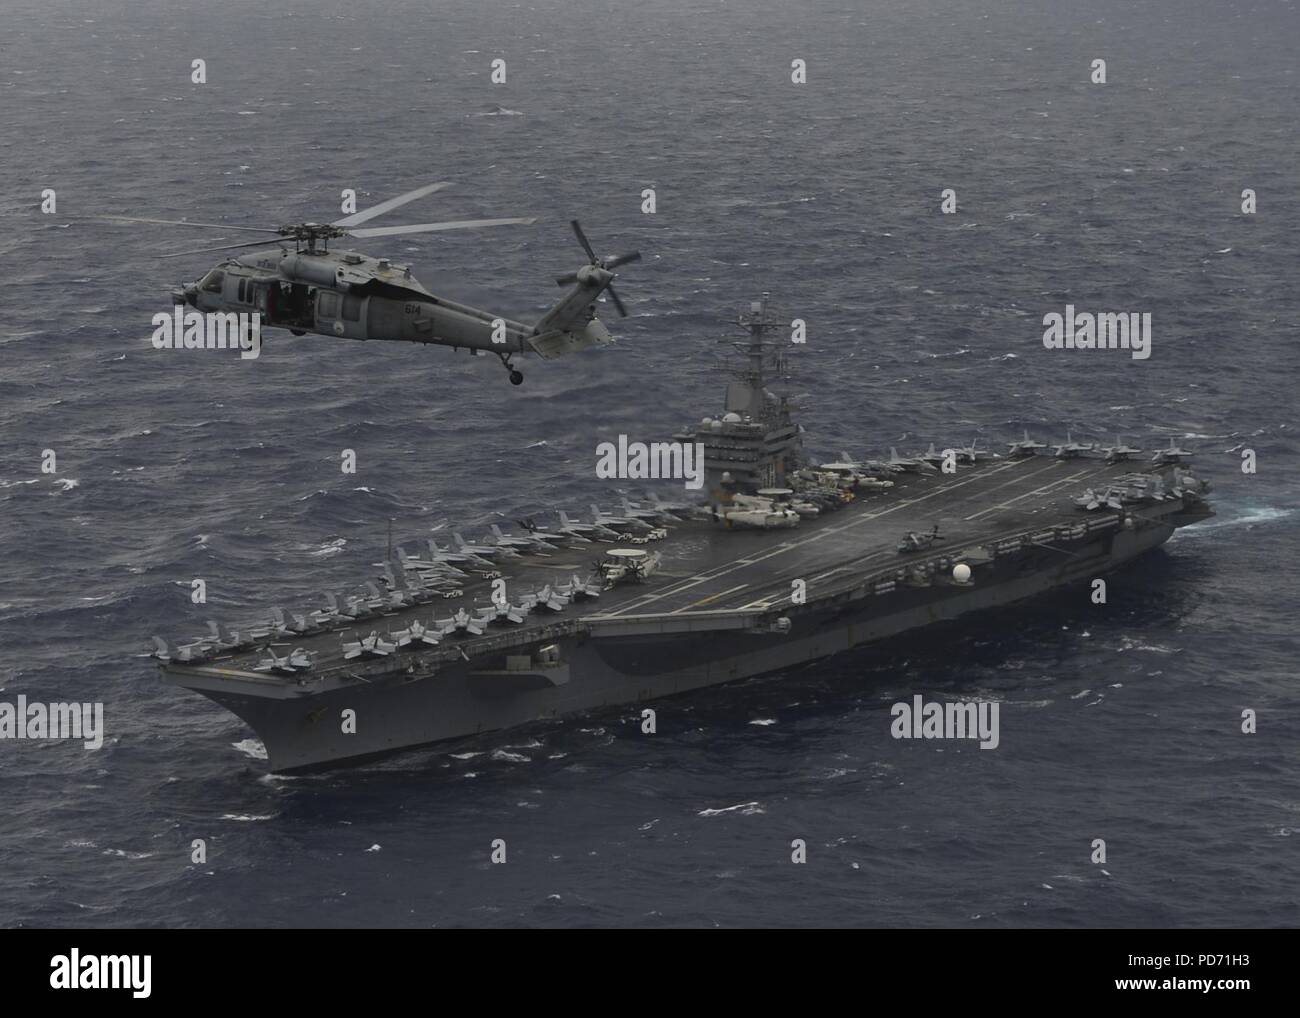 Ein MH-60S Sea Hawk Hubschrauber schwebt über dem Flugzeugträger USS Nimitz (CVN 68) während ein Foto Übung mit der indischen Marine und Japan Maritime Verteidigung-kraft während der Übung Malabar 2017. Stockfoto